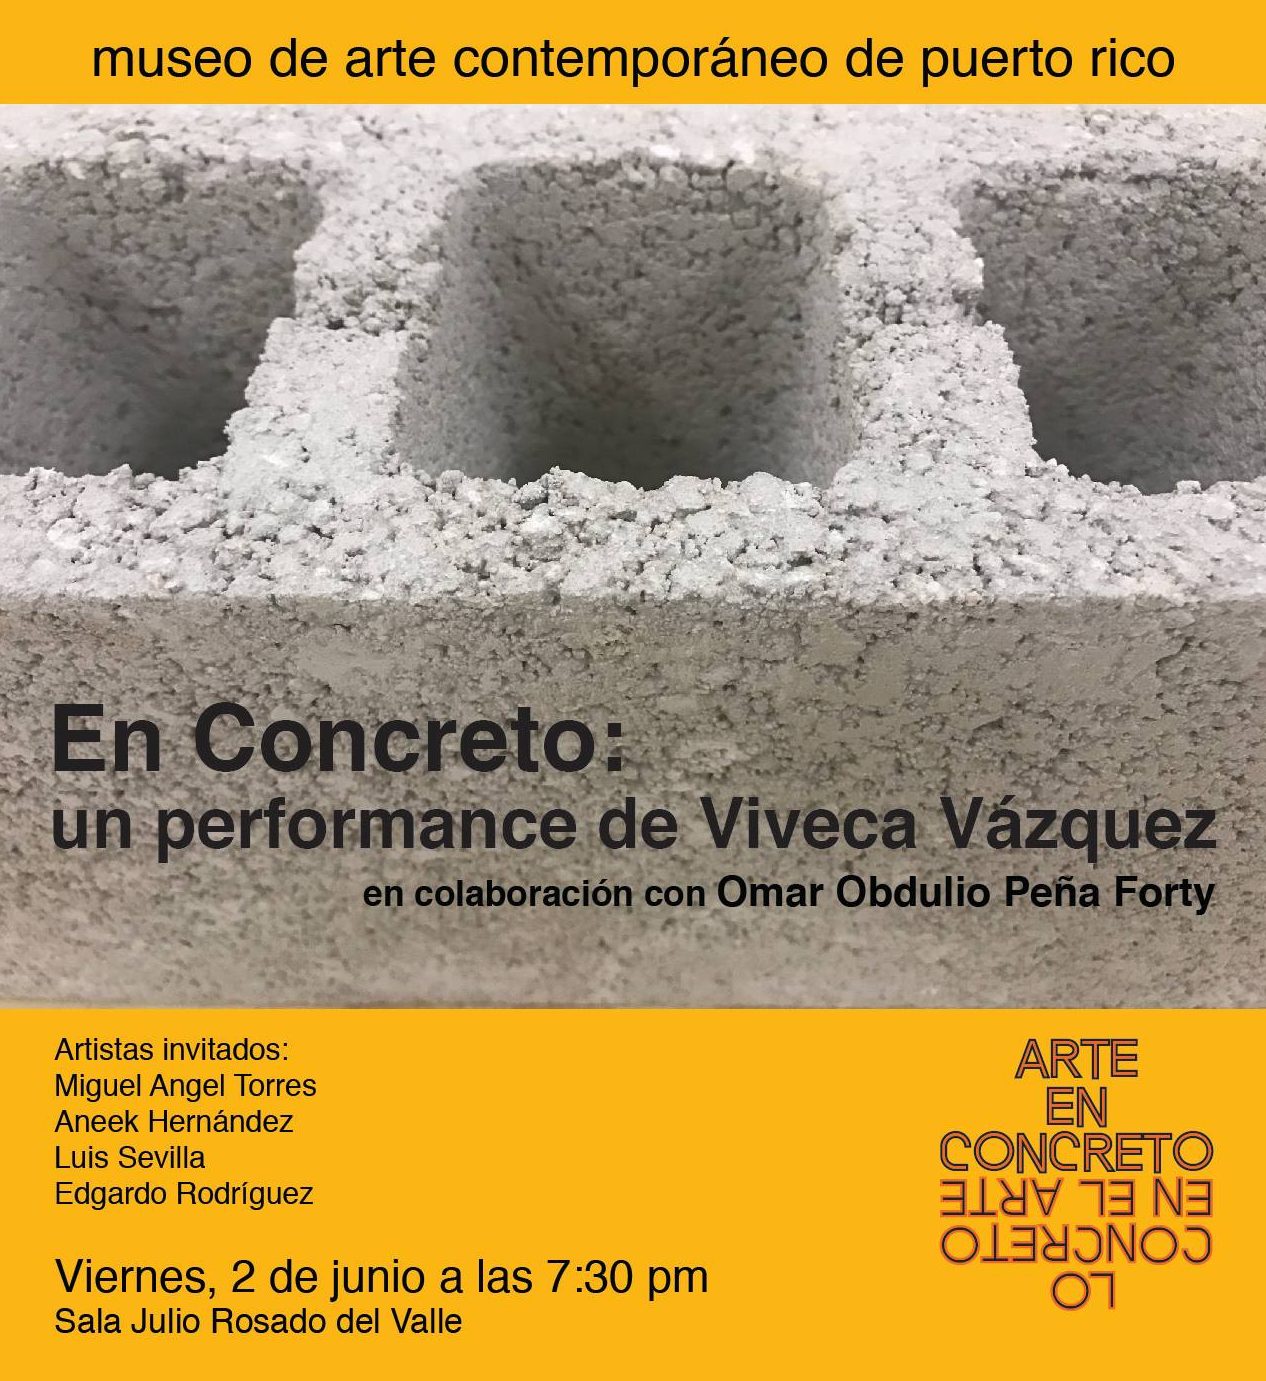 Exhibición "Arte en concreto-lo concreto en el arte"